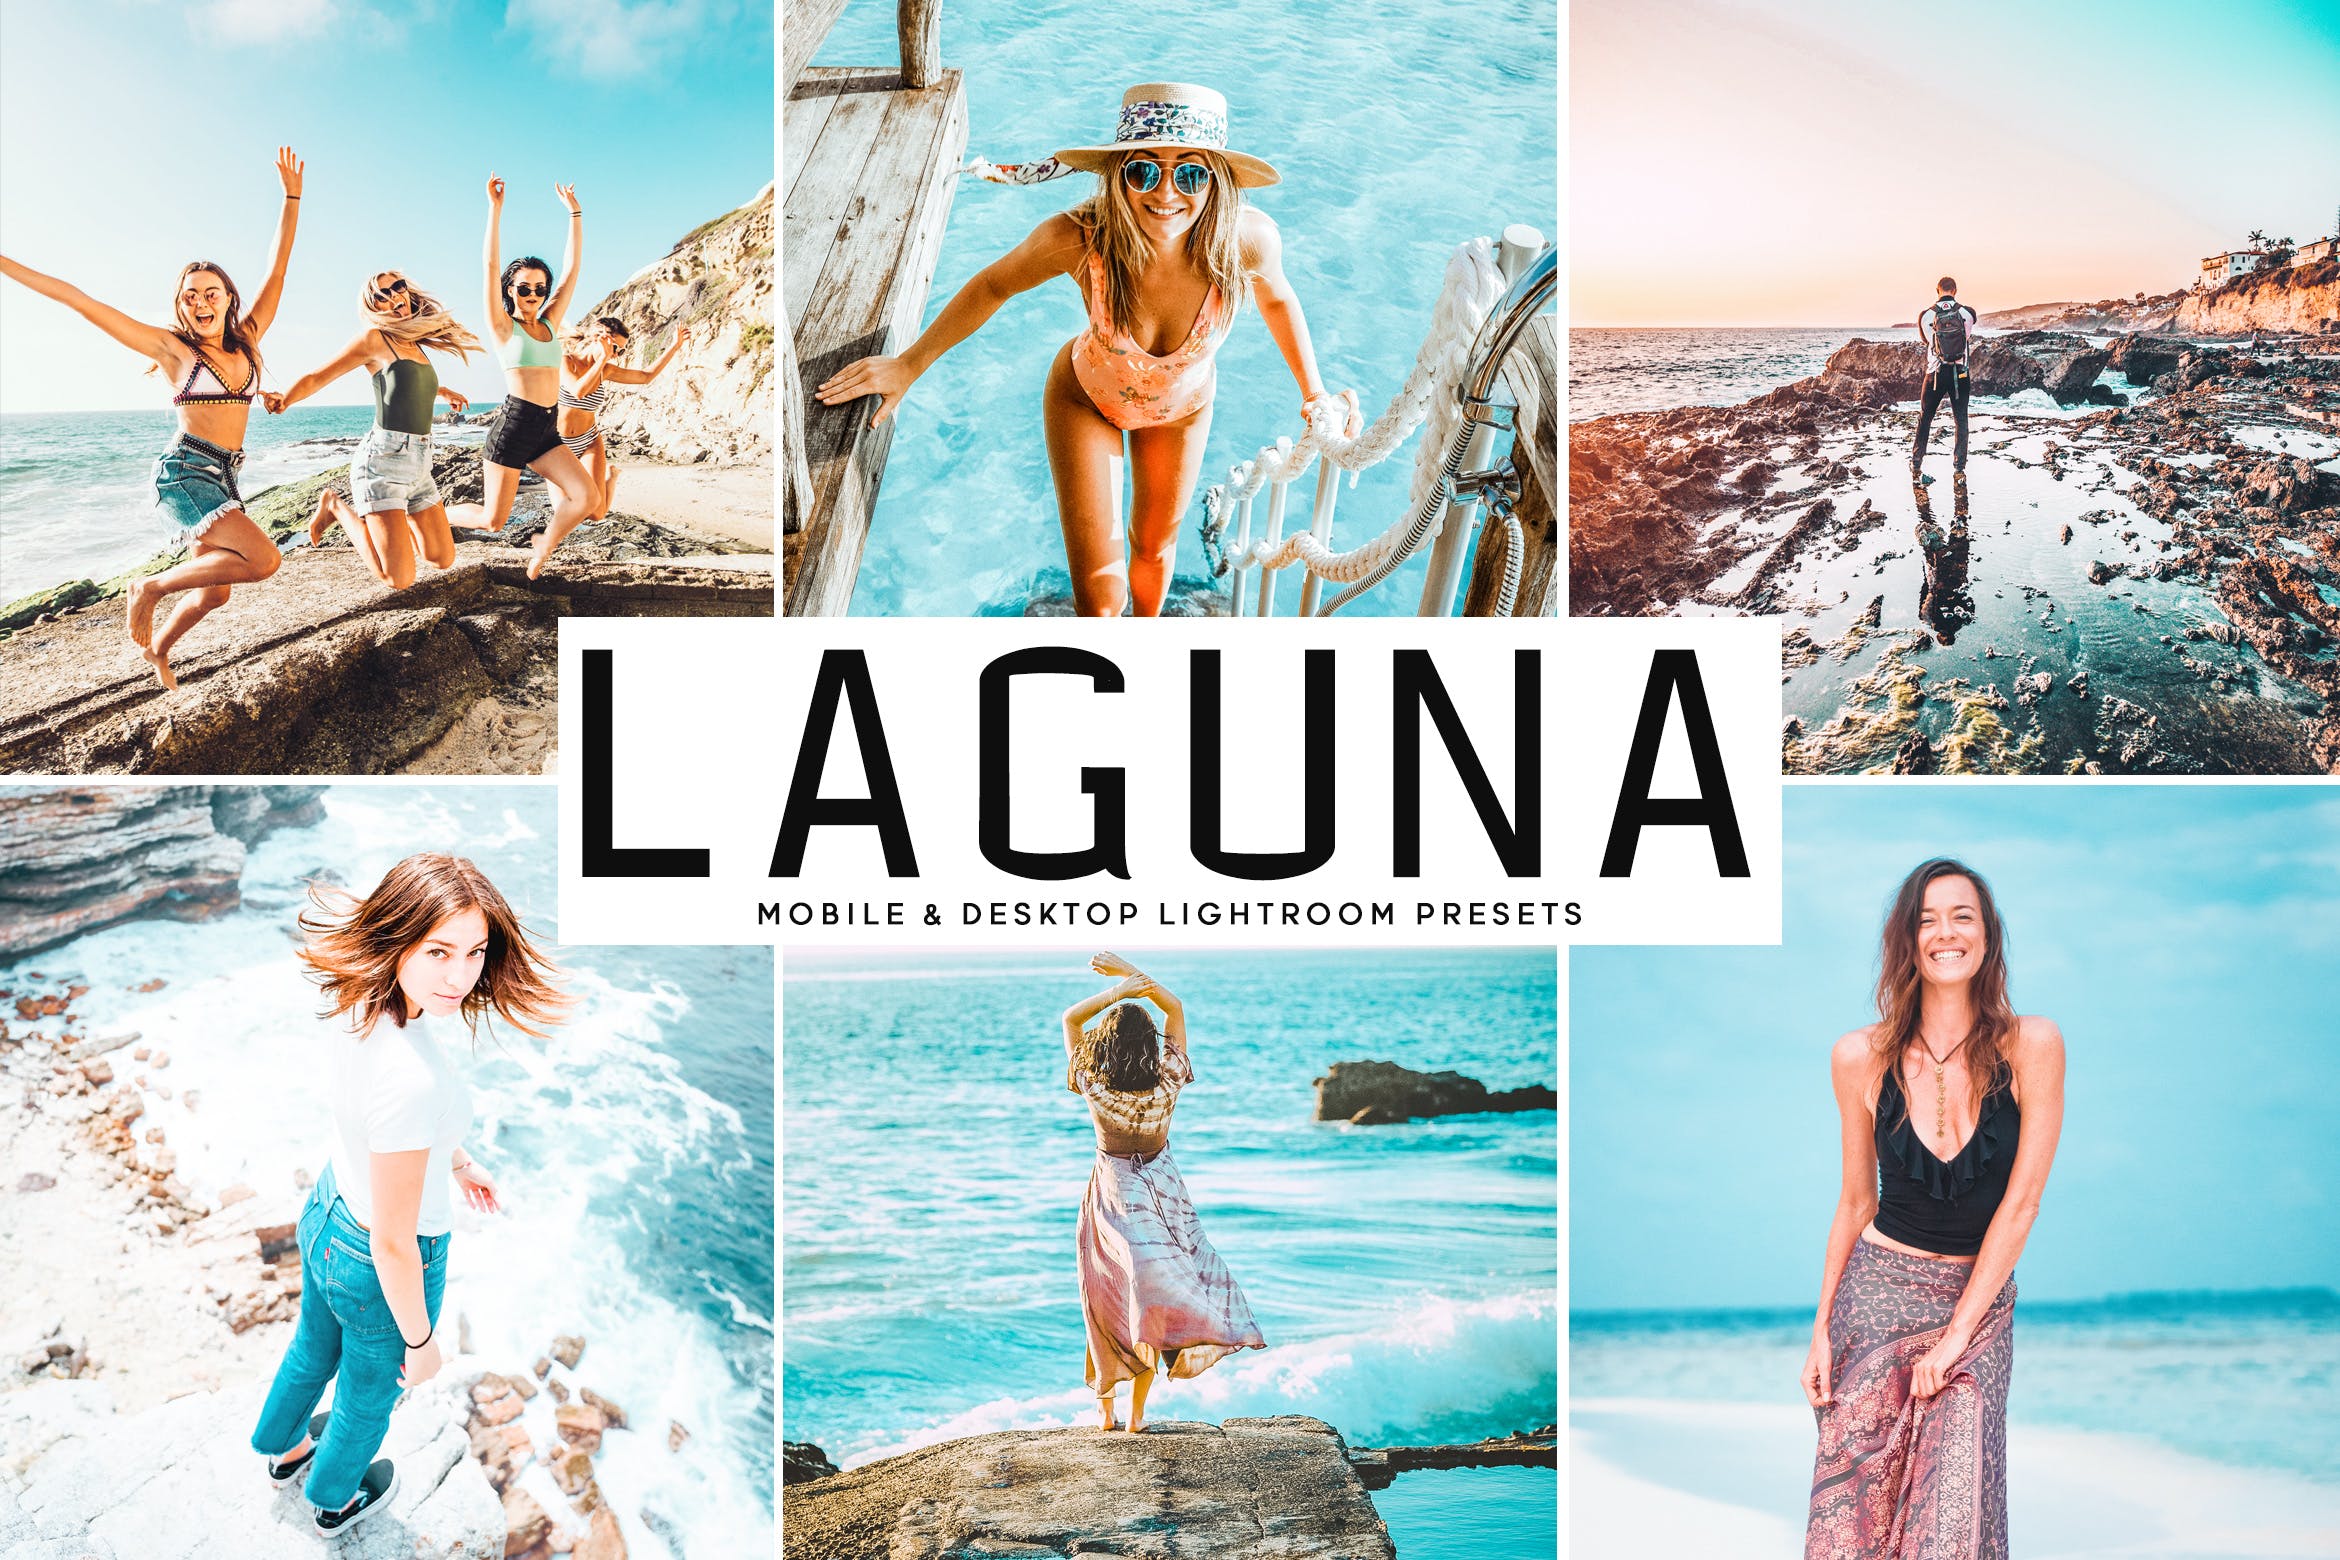 海洋海岛摄影绝配的调色滤镜蚂蚁素材精选LR预设 Laguna Mobile & Desktop Lightroom Presets插图